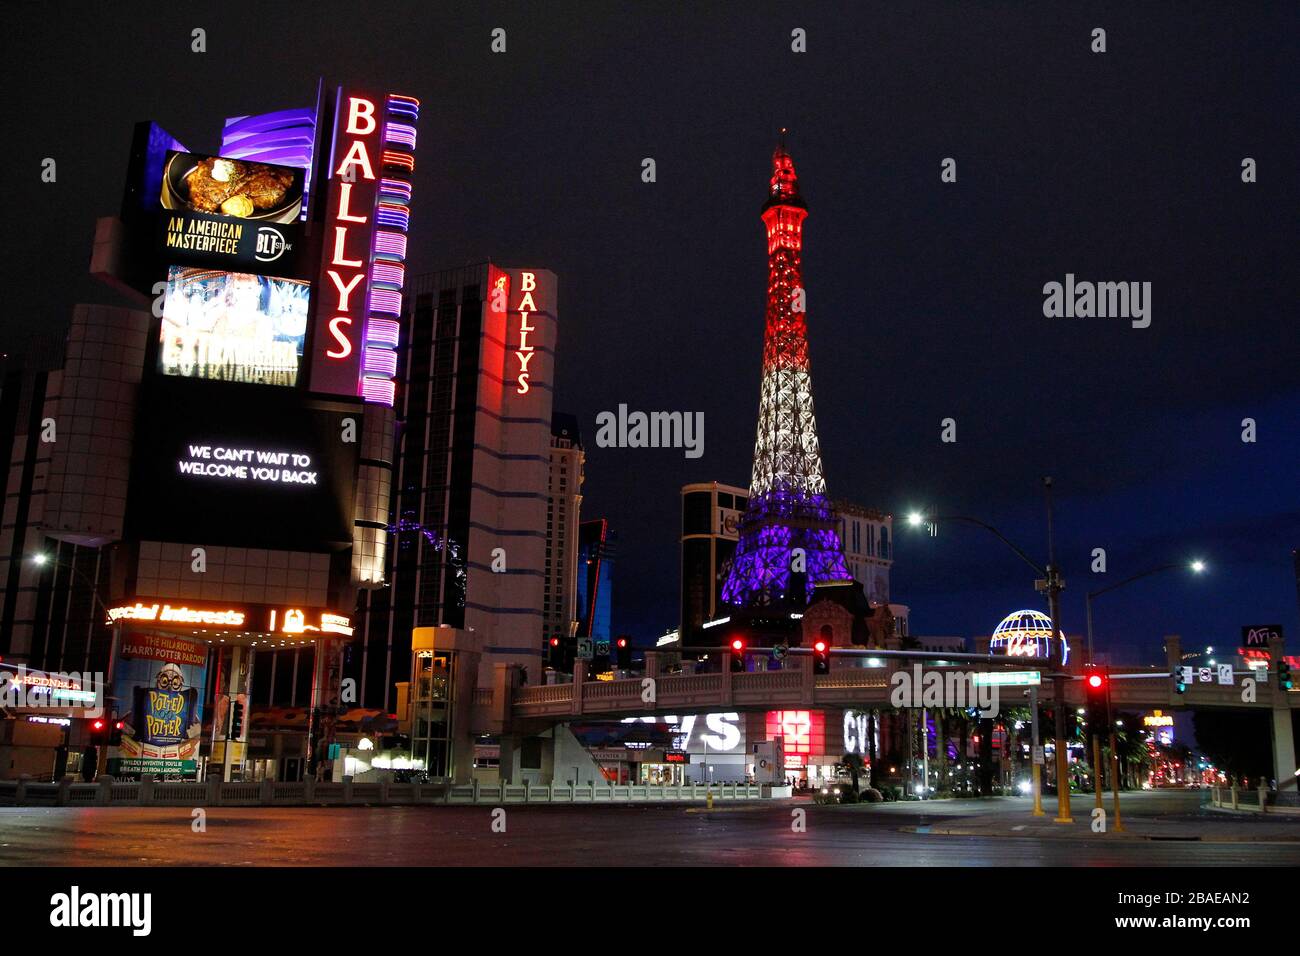 Paris Las Vegas in Las Vegas, the United States from $26: Deals